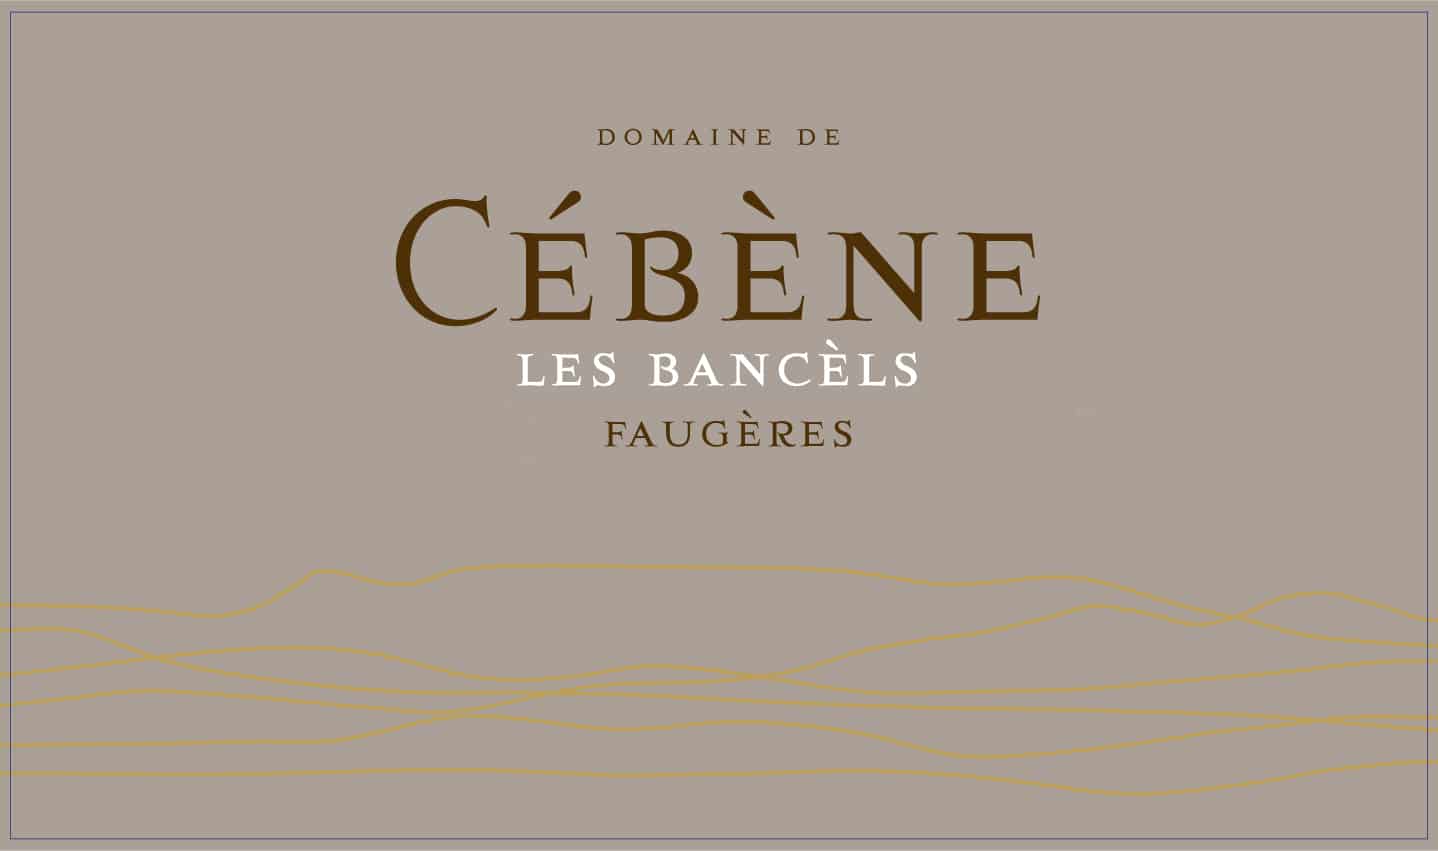 Domaine de Cébène FAUGÈRES 2015 — Les bancels